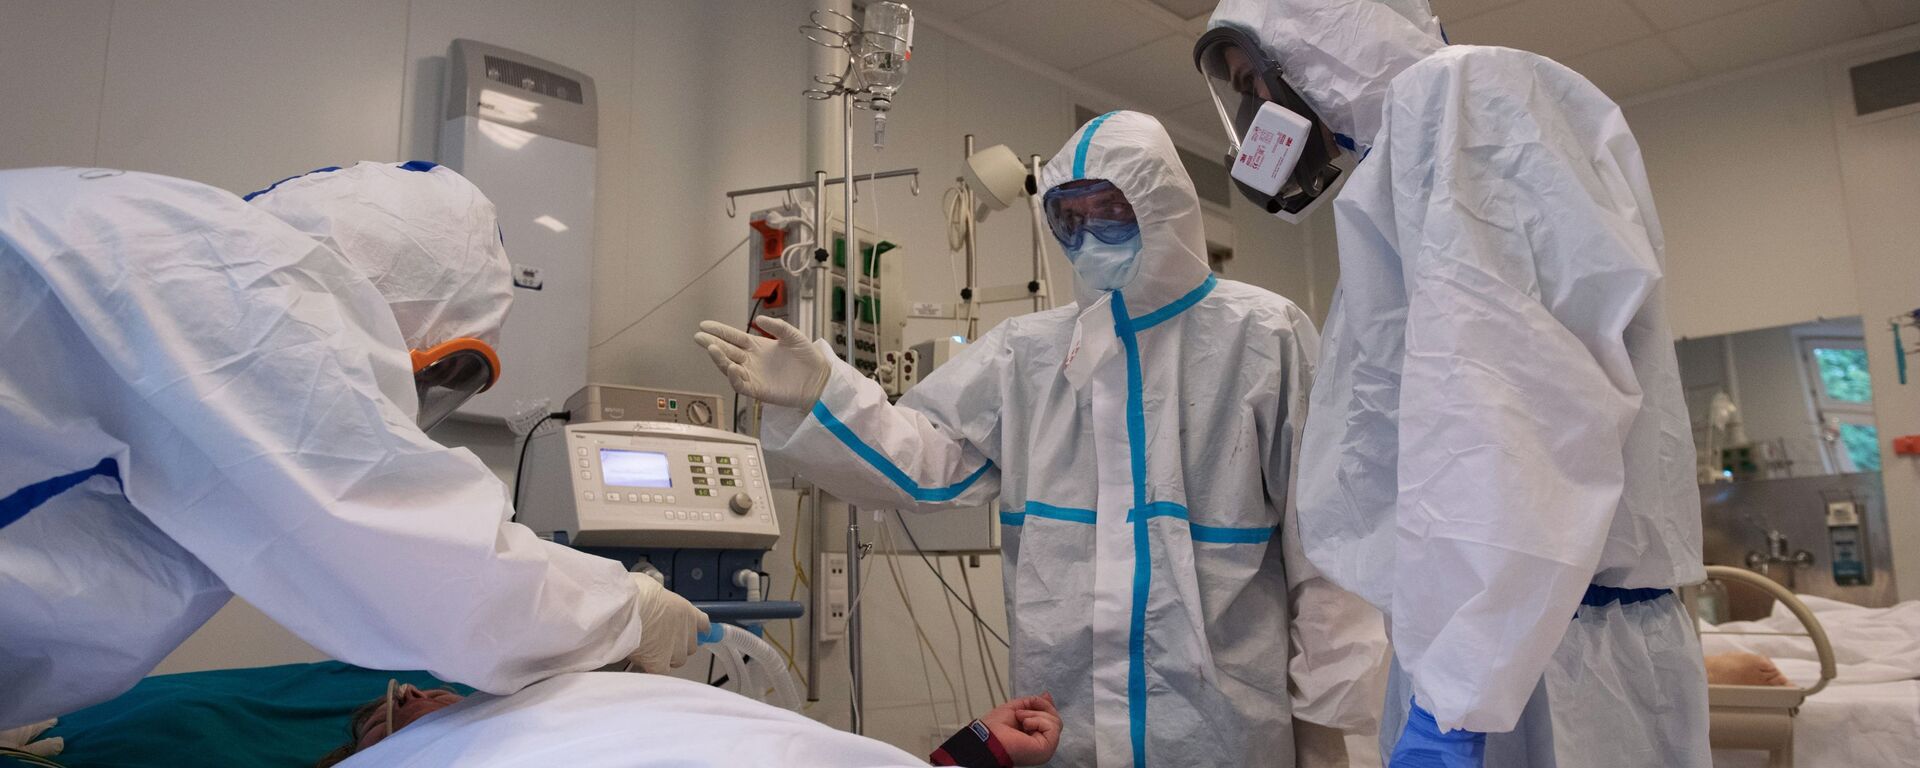 فحص و معالجة مرضى كوفيد-19 (كورونا) في مستشفى بيروغوفا في موسكو، روسيا  18 مايو 2020 - سبوتنيك عربي, 1920, 28.11.2021